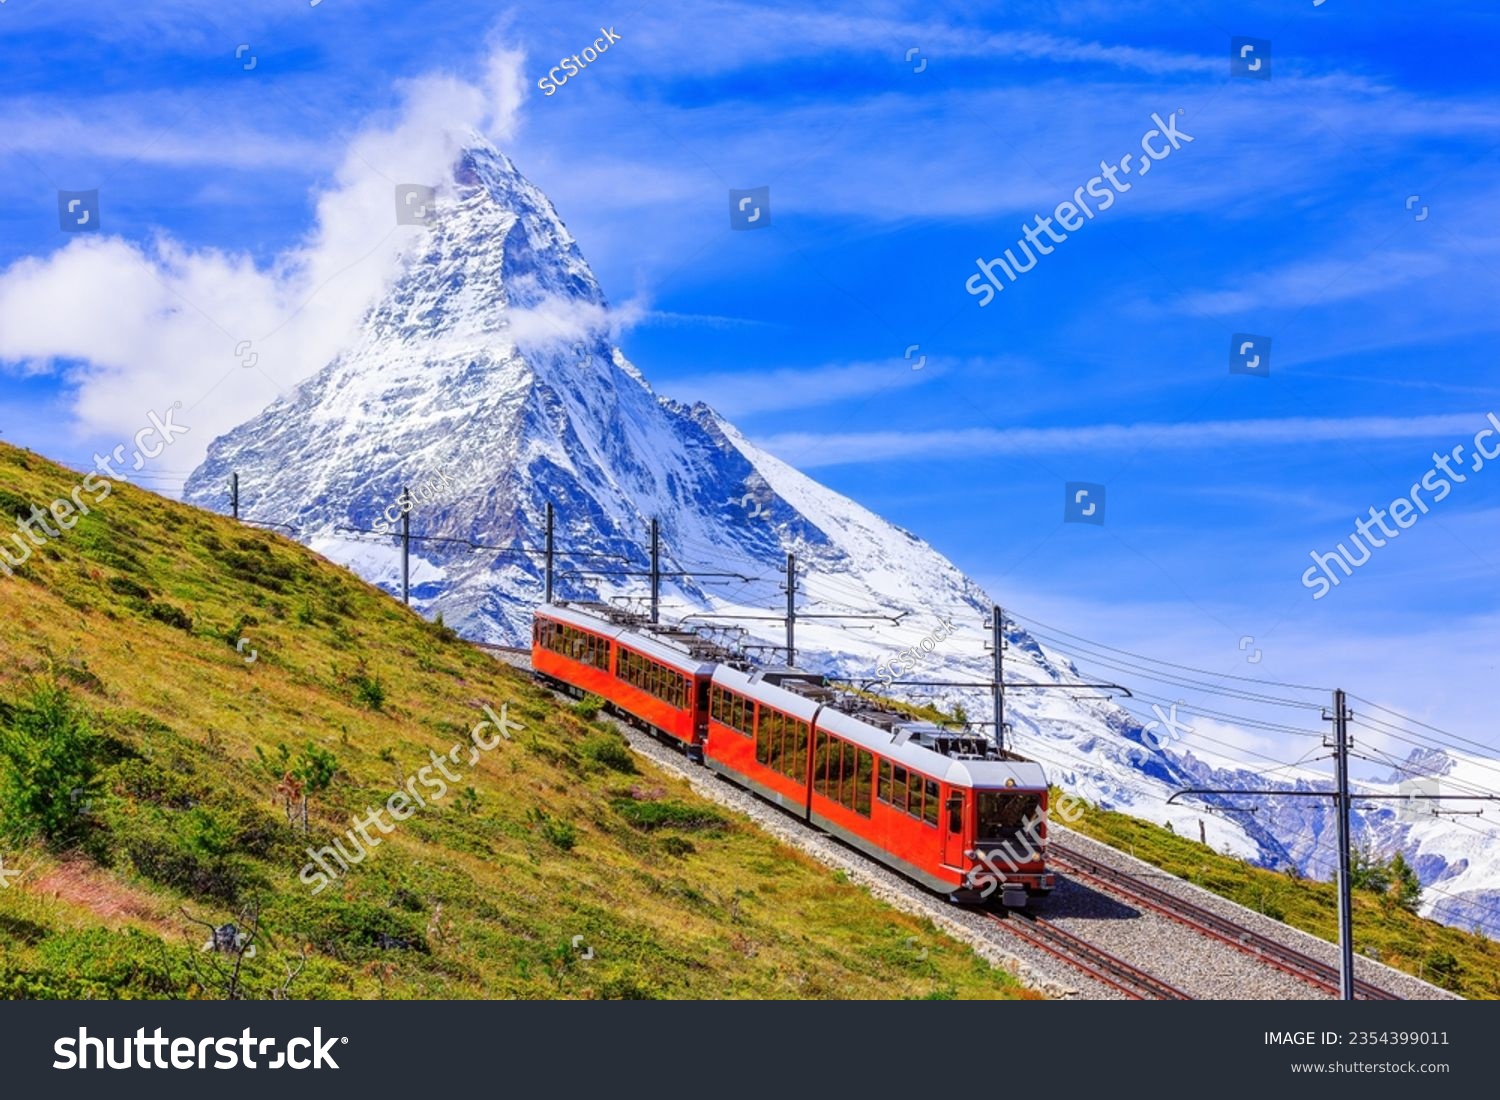 Zermatt, Switzerland. Gornergrat tourist train with Matterhorn mountain in the background. Valais region. #2354399011